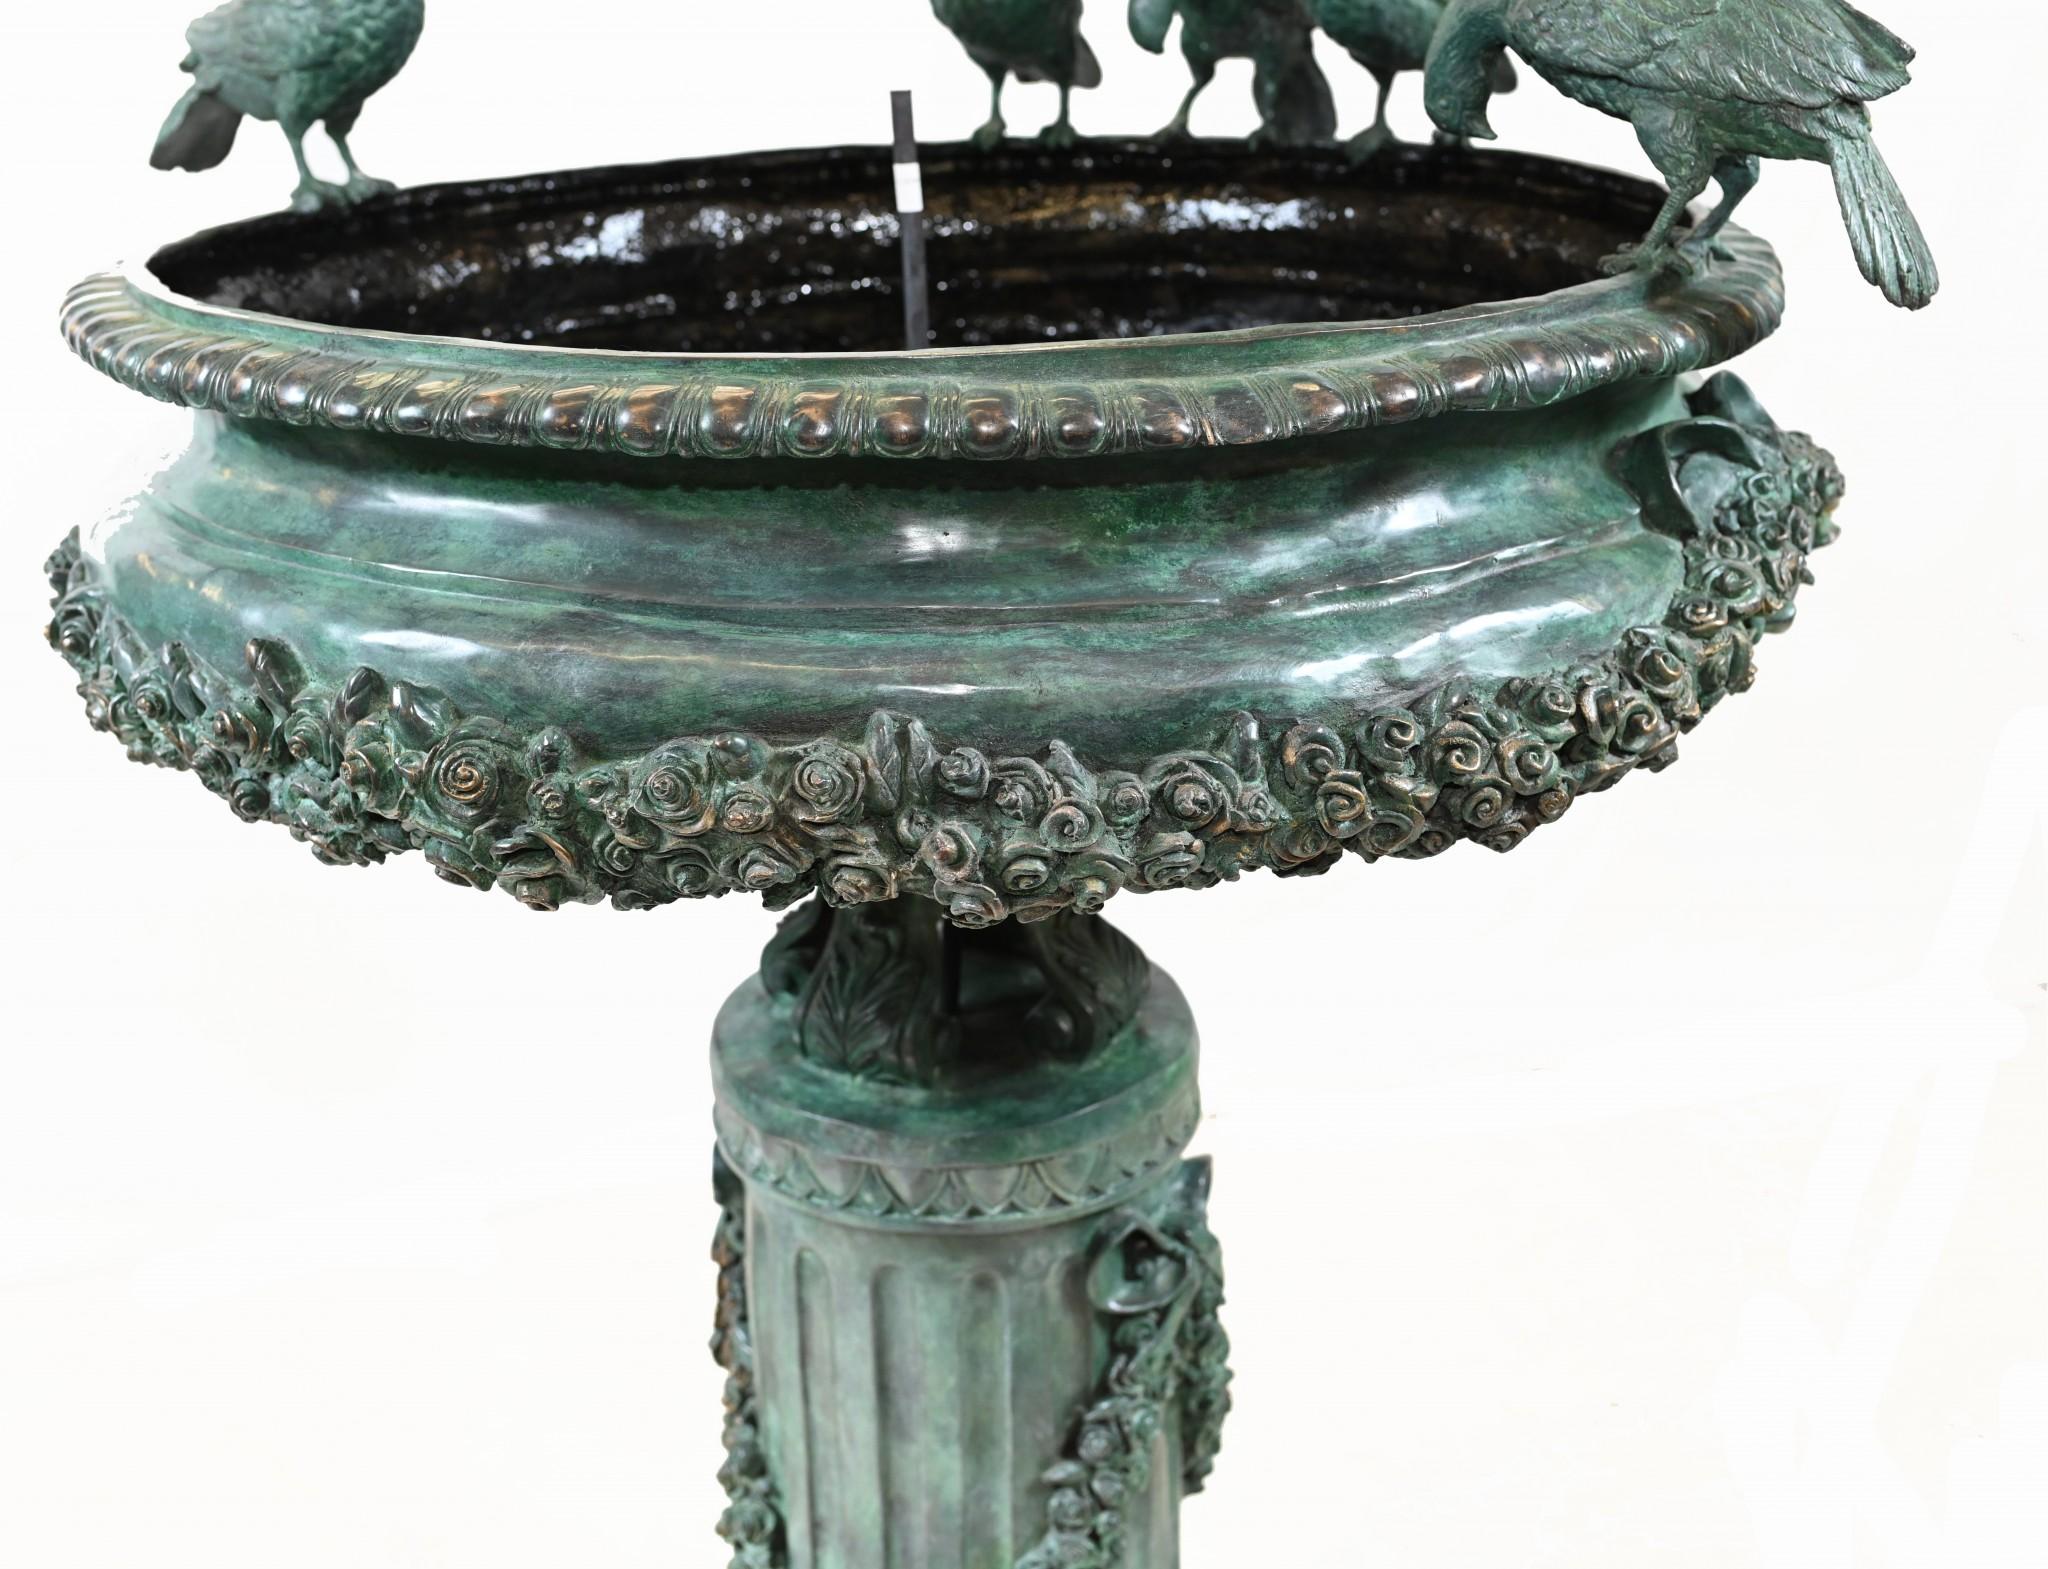 Superbe grande fontaine d'eau en bronze italienne
L'aspect classique est complété par la magnifique patine Verdis gris.
J'aime les oiseaux représentés en train de boire sur le bord du bol principal.
Les draperies classiques de la colonne centrale